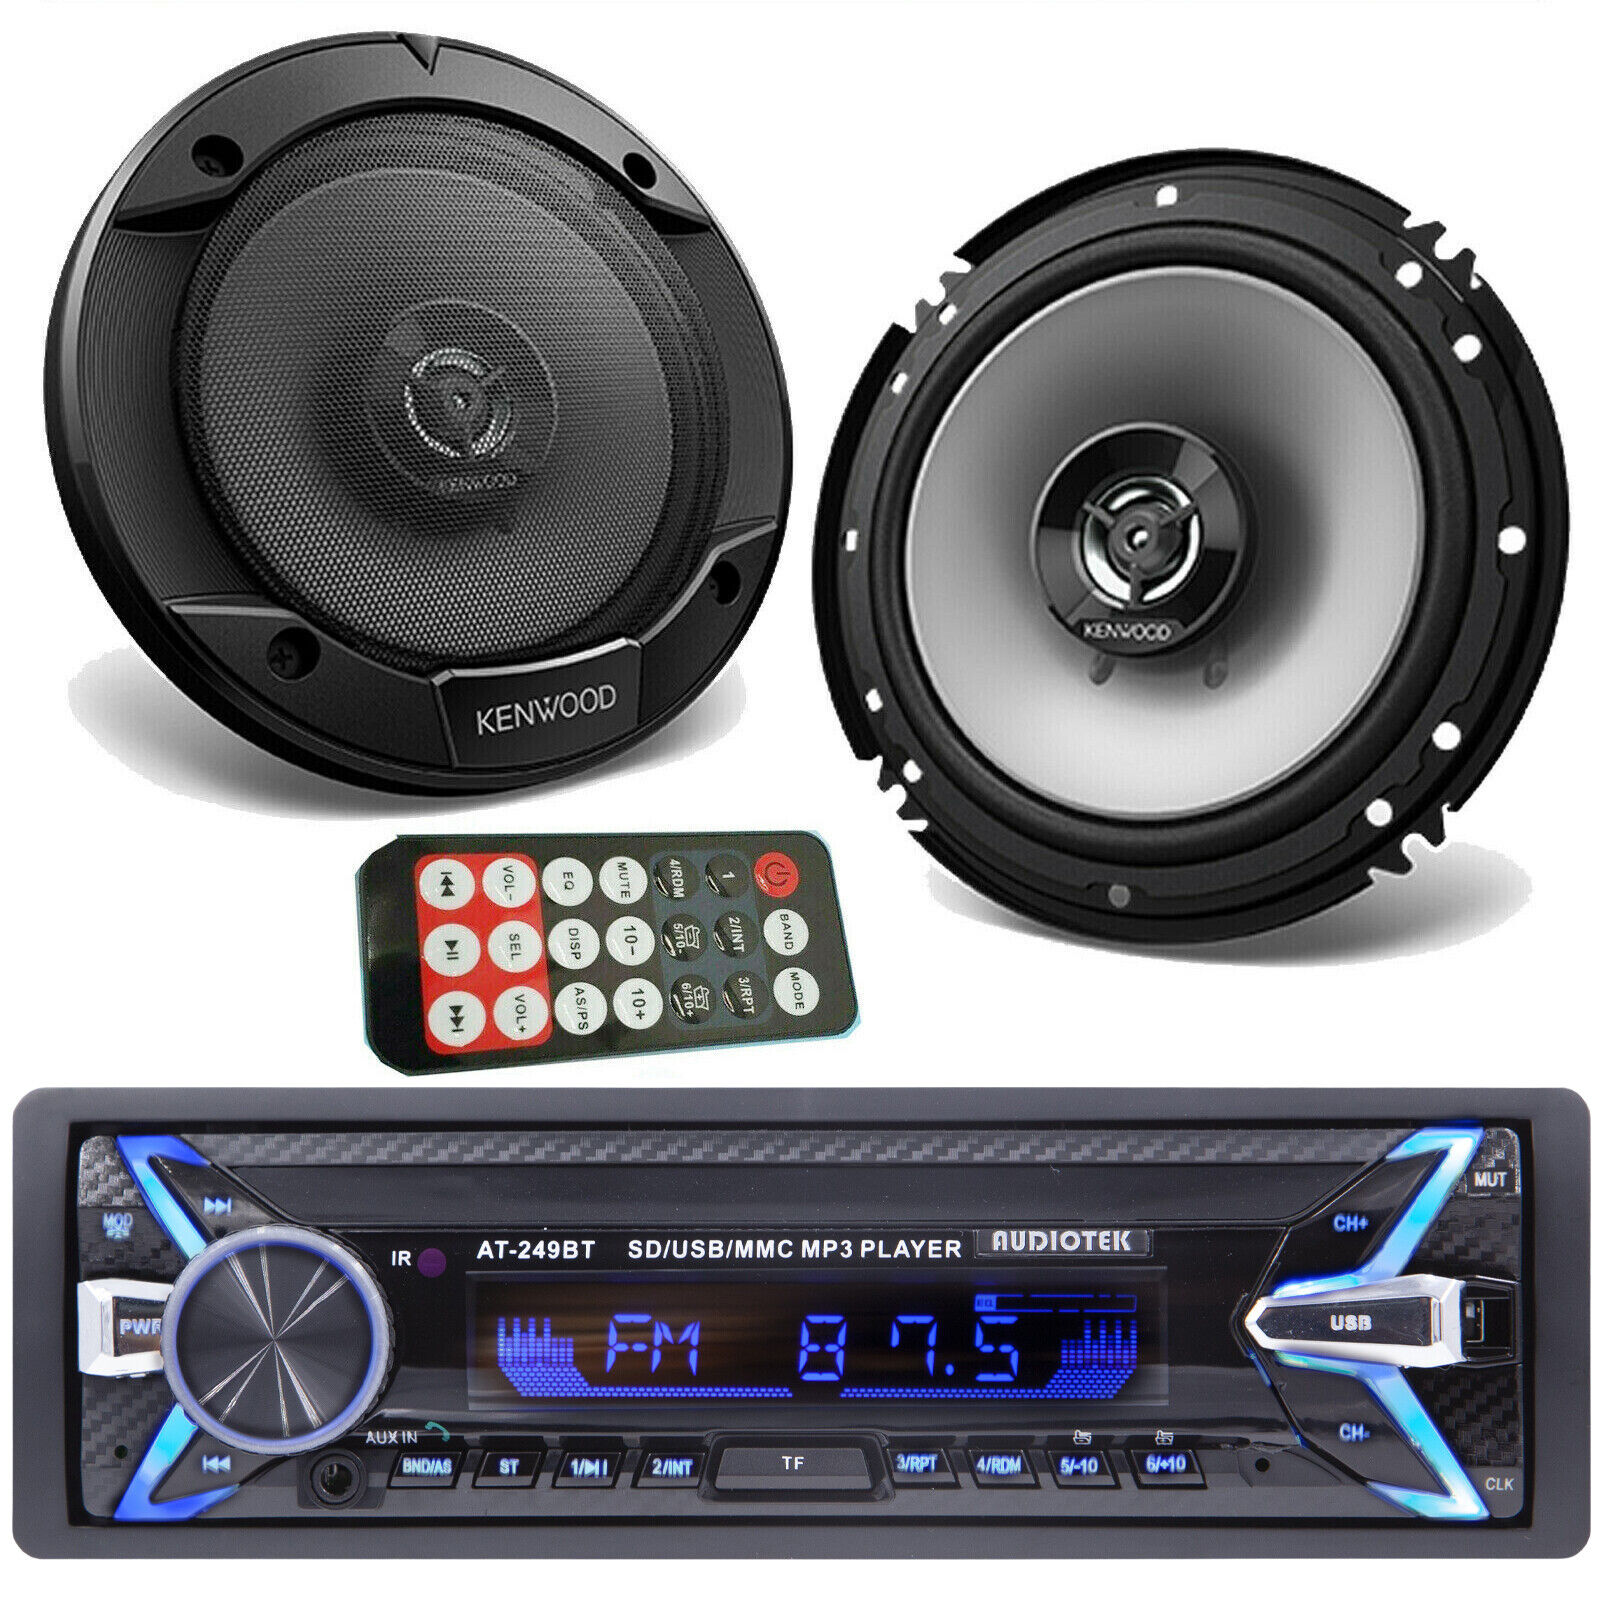 2x Kenwood KFC-1666S 6.5" Speakers & Audiotek Car Stereo Blu